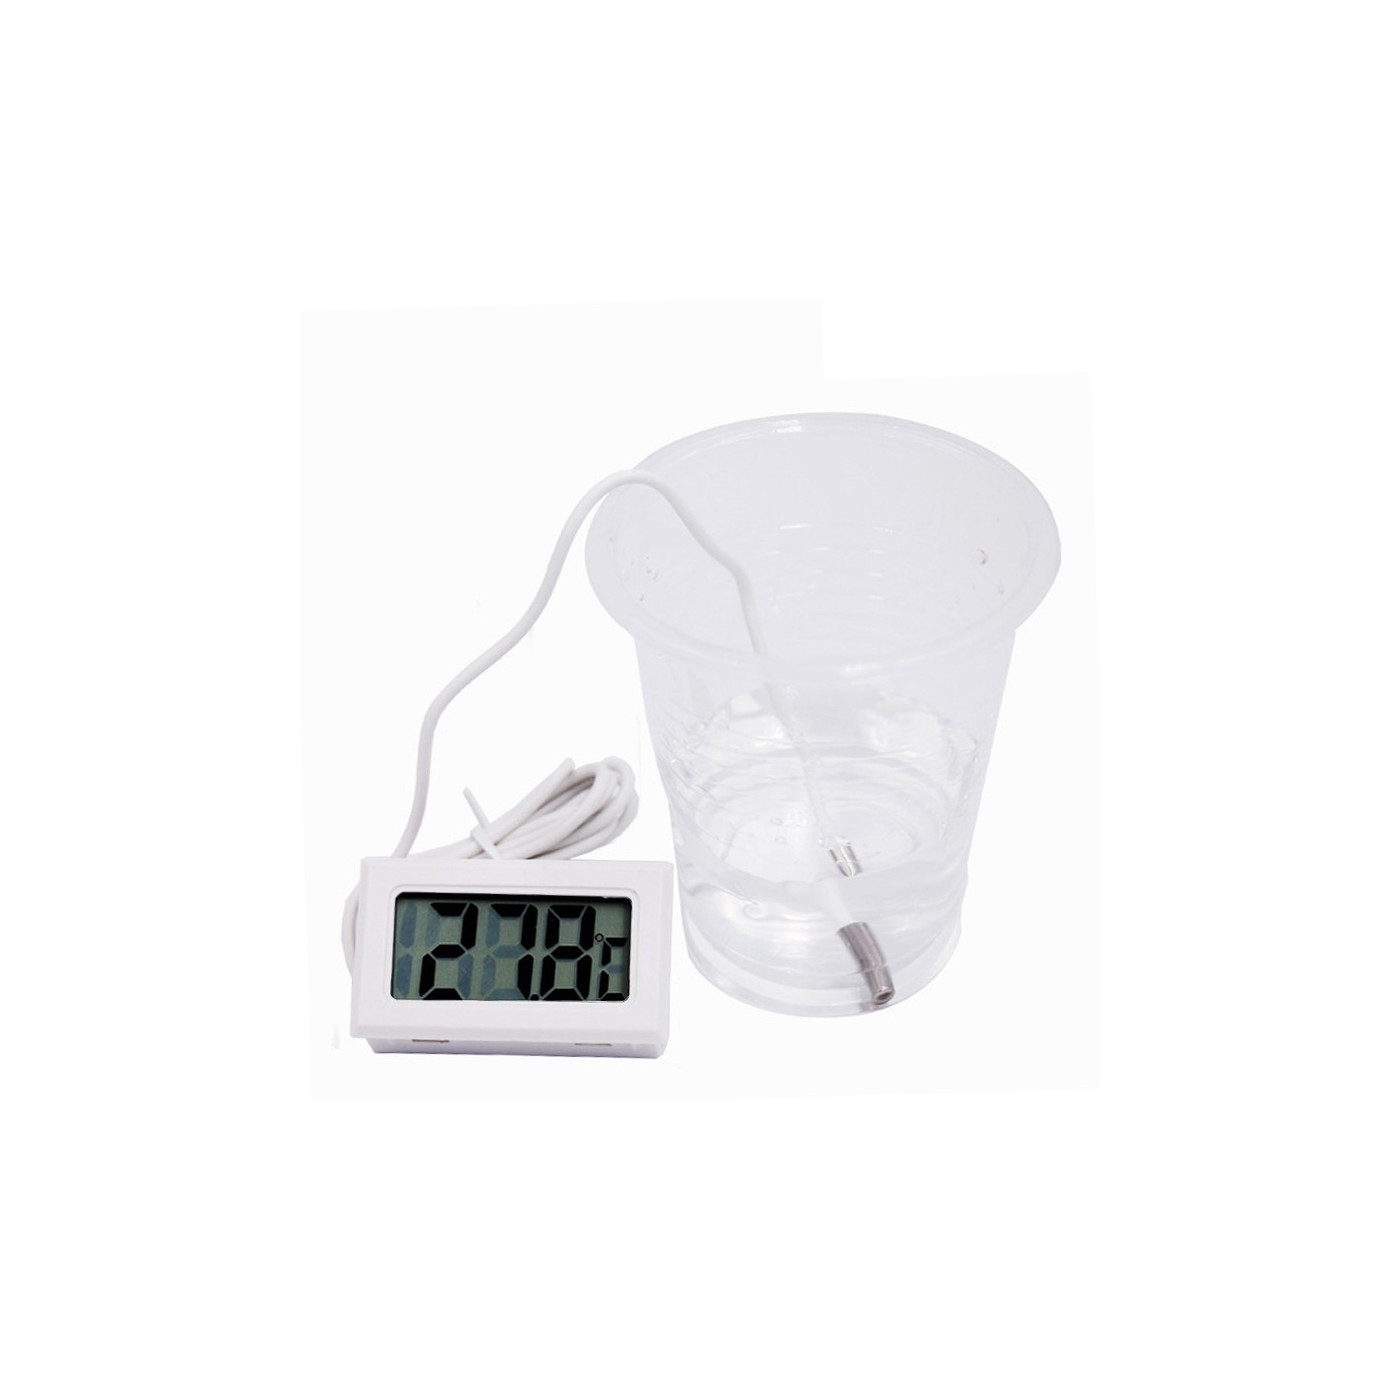 Hvidt LCD -termometer med sonde (til akvarium osv.)